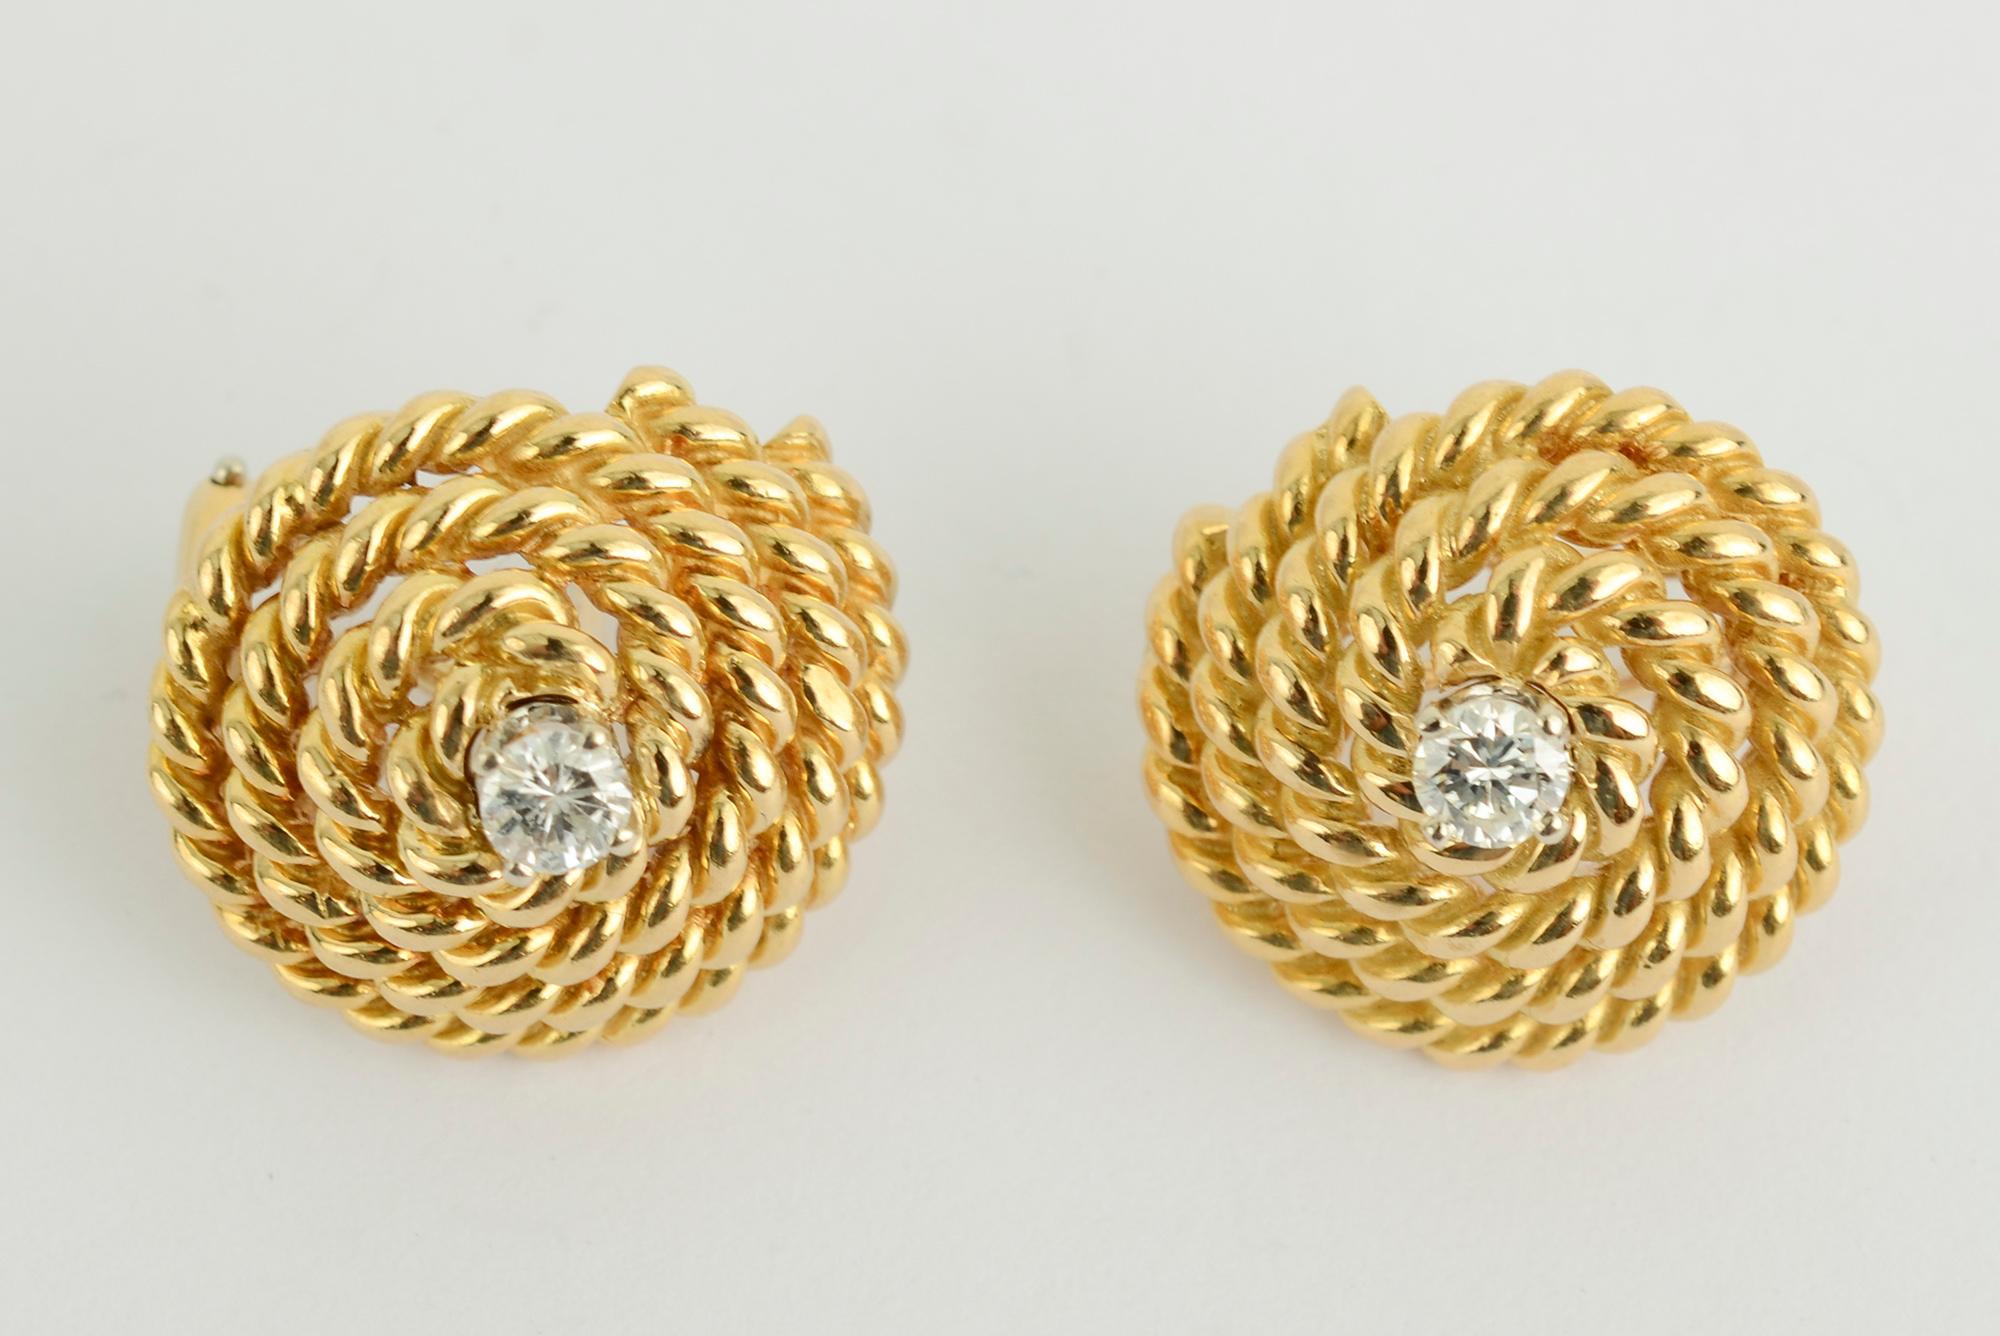 Die klassischen Tiffany-Ohrringe mit Spirale haben den ungewöhnlichen Zusatz eines zentralen Diamanten. Jeder Stein hat etwa 1/4 Karat. Die Rückseiten sind Pfosten und Klammern. Die Ohrringe sind 3/4 Zoll im Durchmesser. Verkauft mit blauem